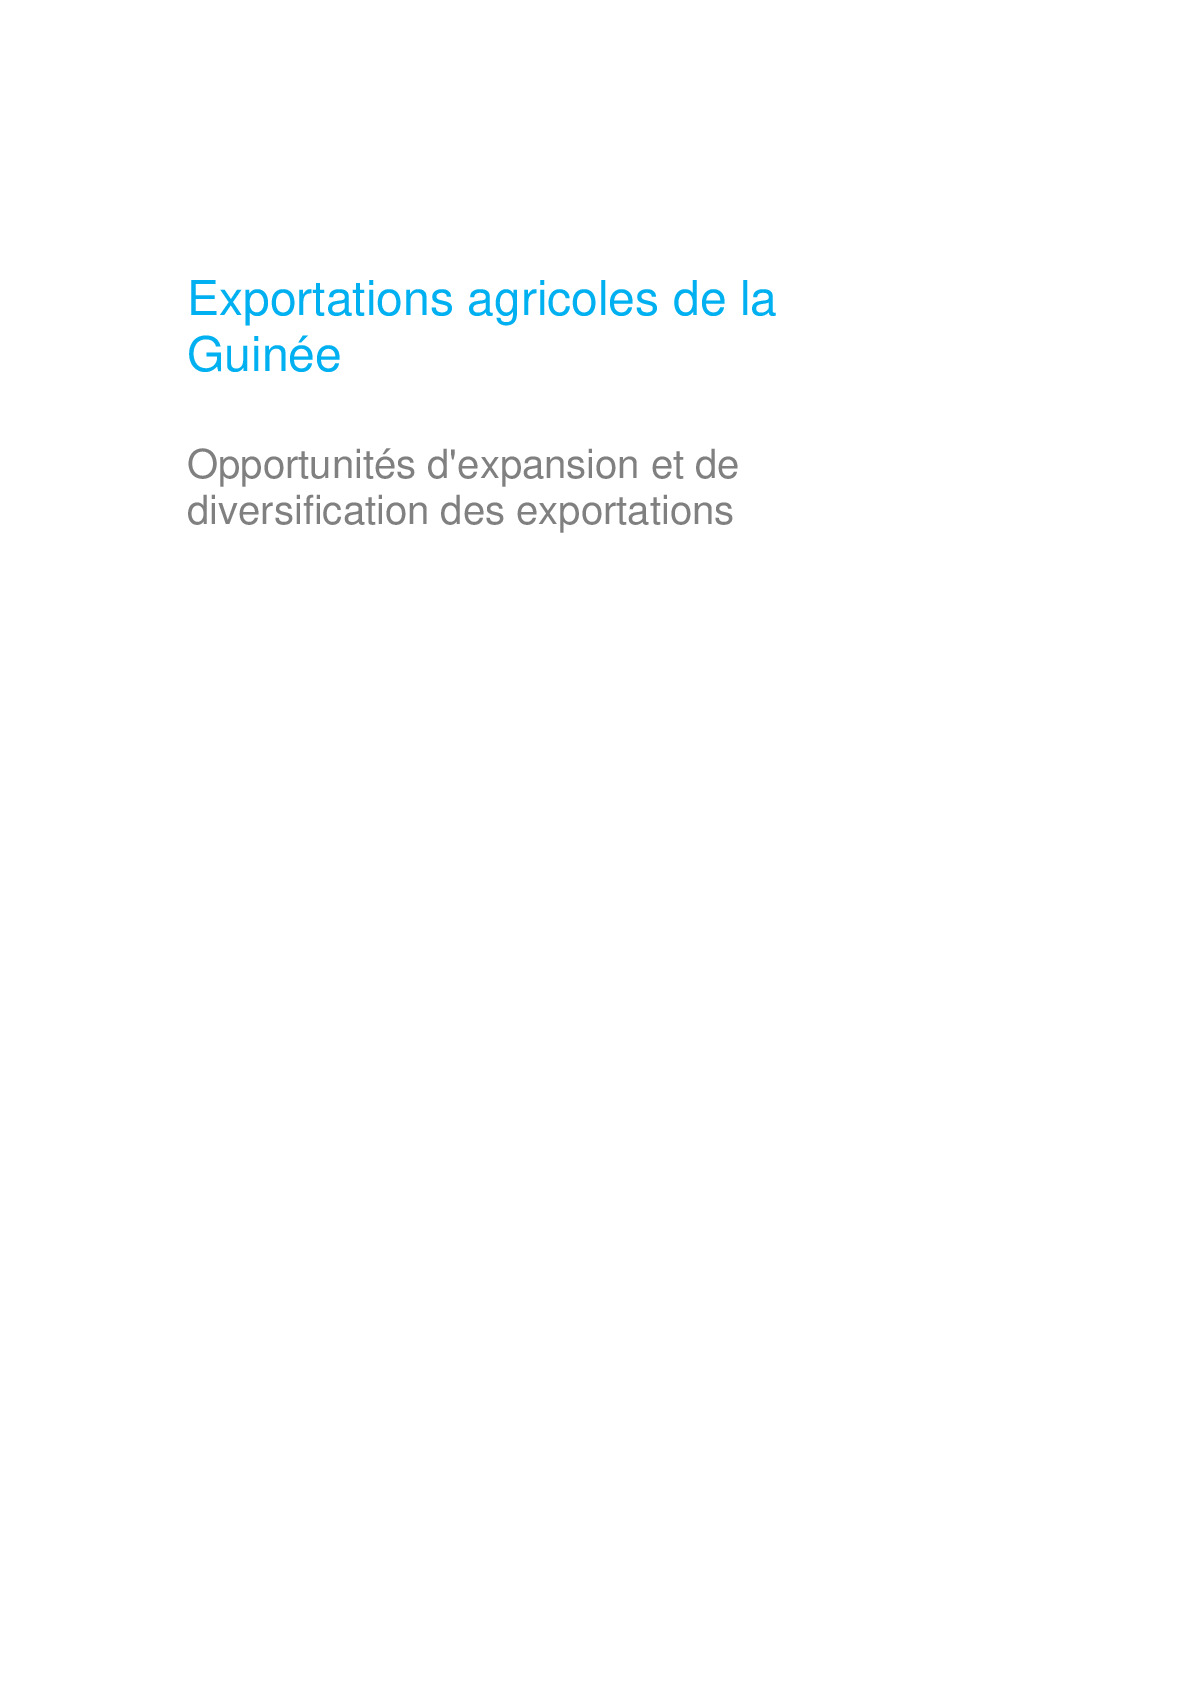 exportations_agricoles_de_la_guinee_opportunites_dexpansion_et_de_diversification_des_exportations_-_fr